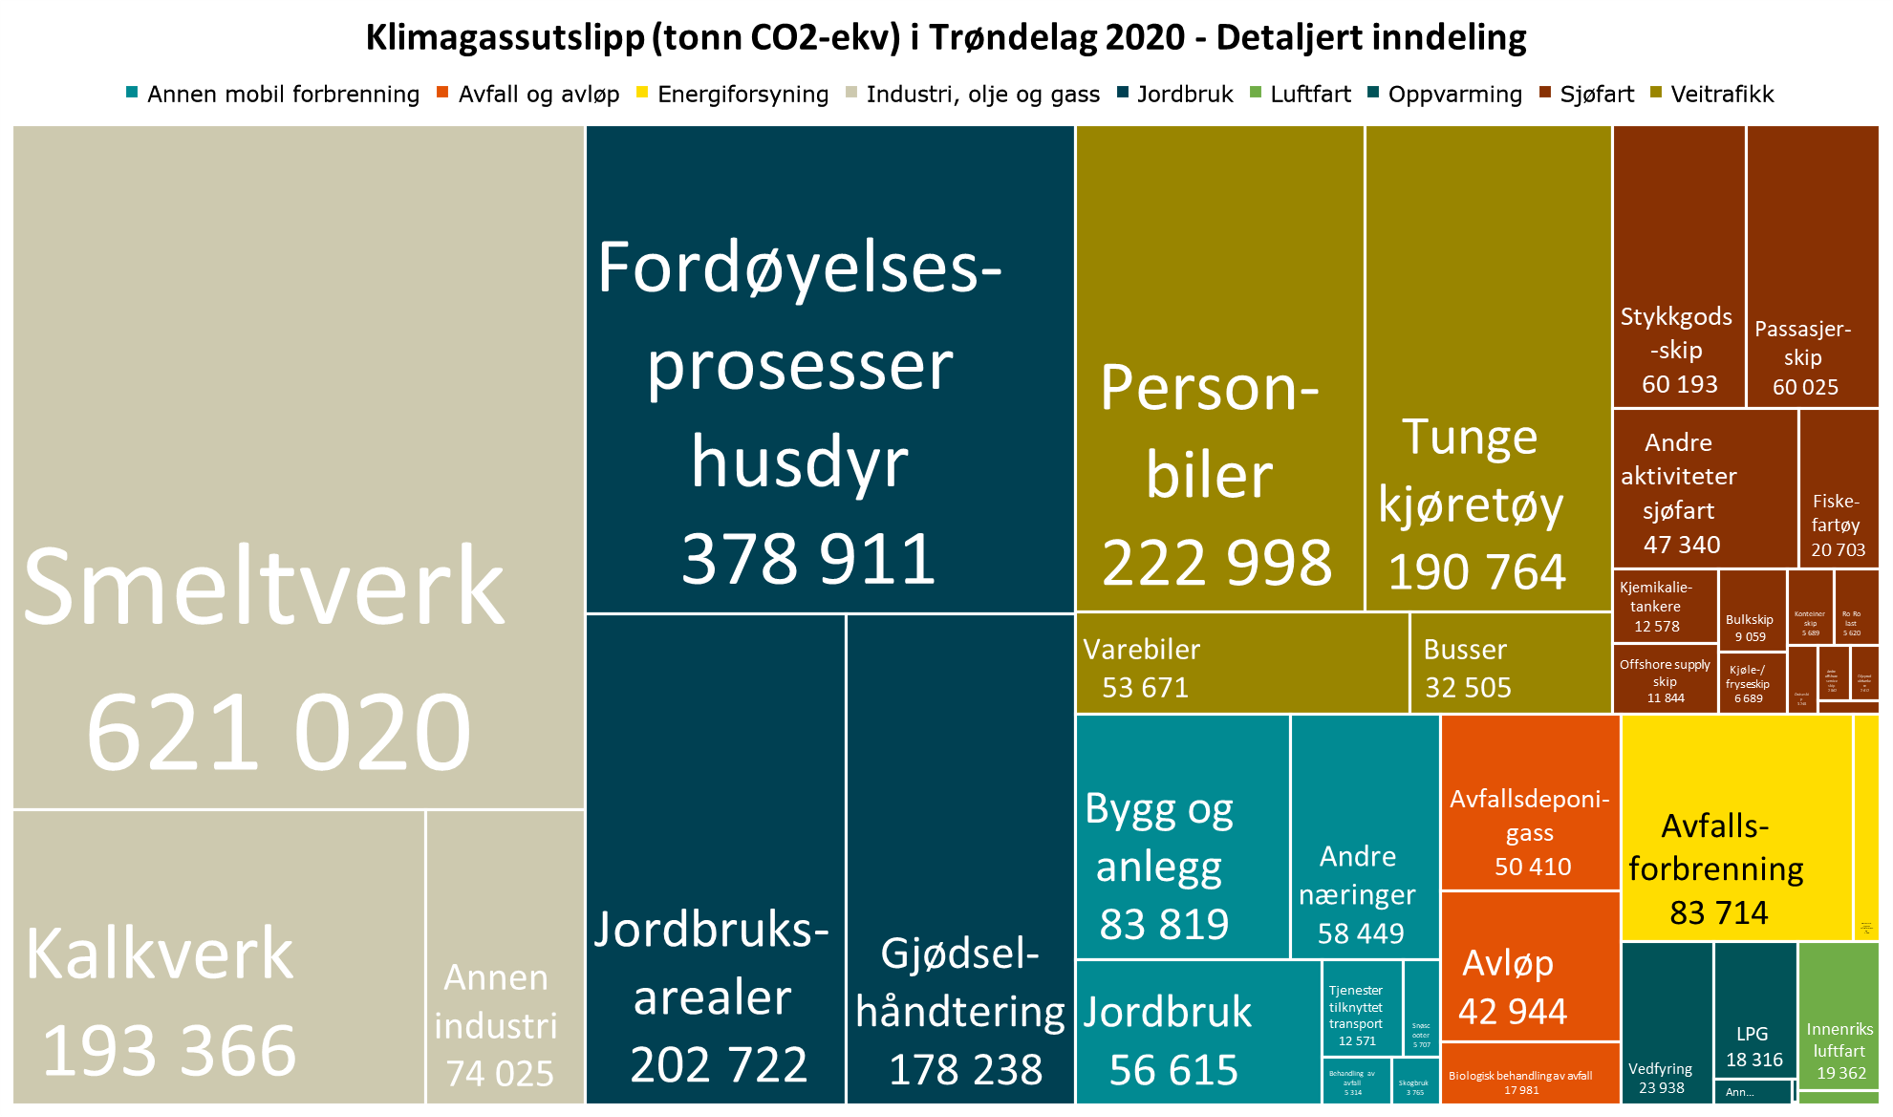 Klimagassutslipp (tonn CO2-ekv) i Trøndelag 2020